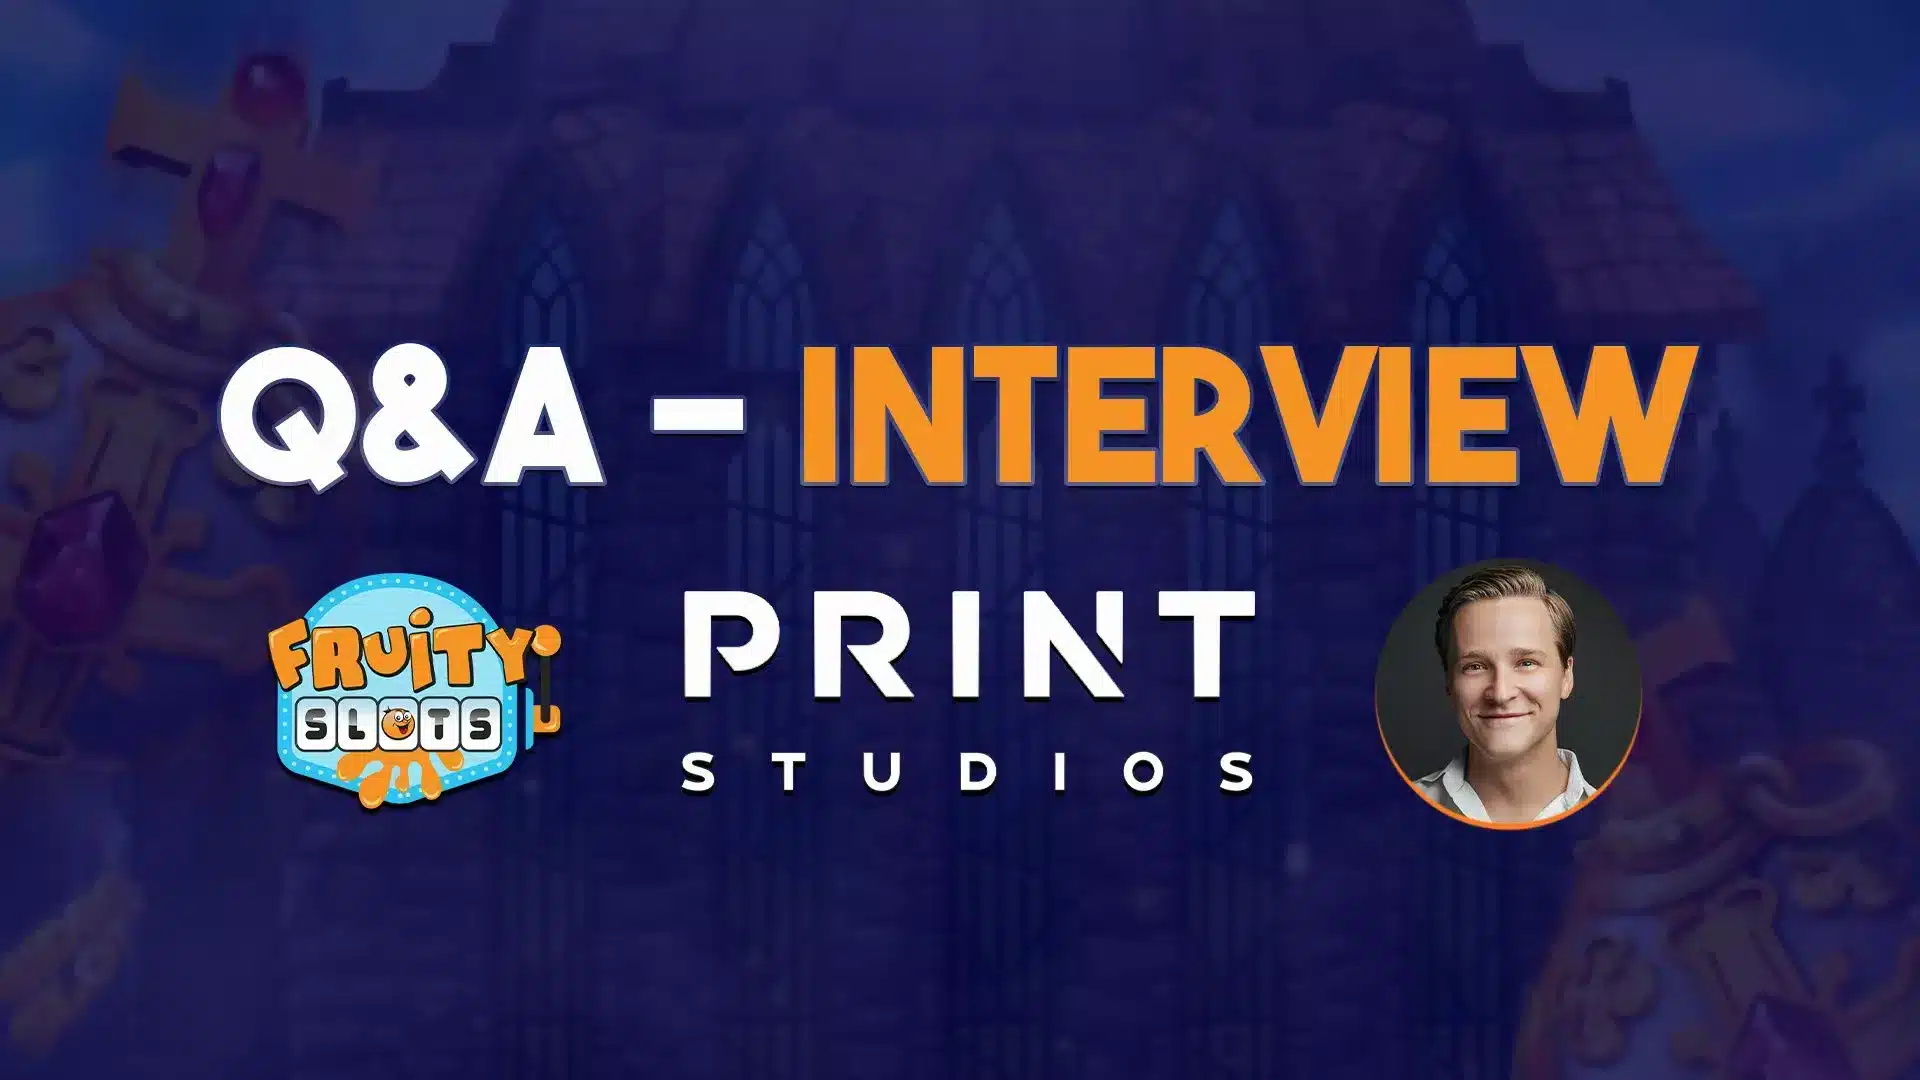 Print Studios Q&A